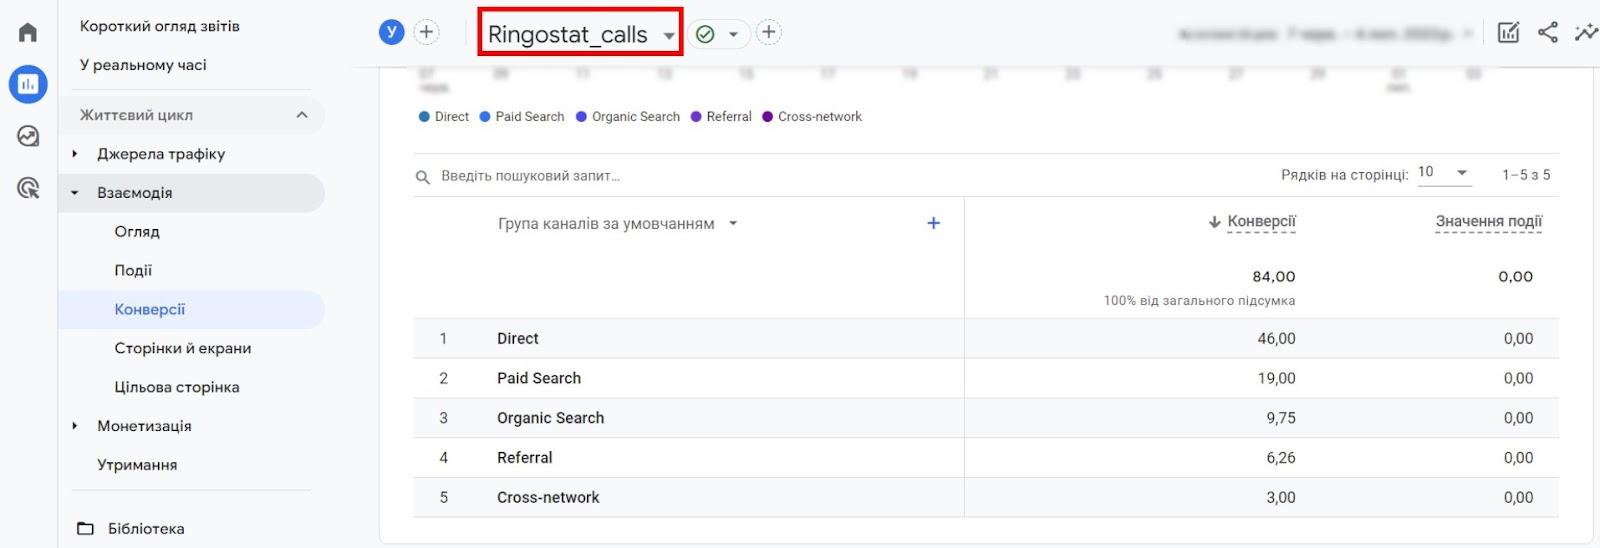 Google Analytics 4, дані про дзвінки в системі веб-аналітики